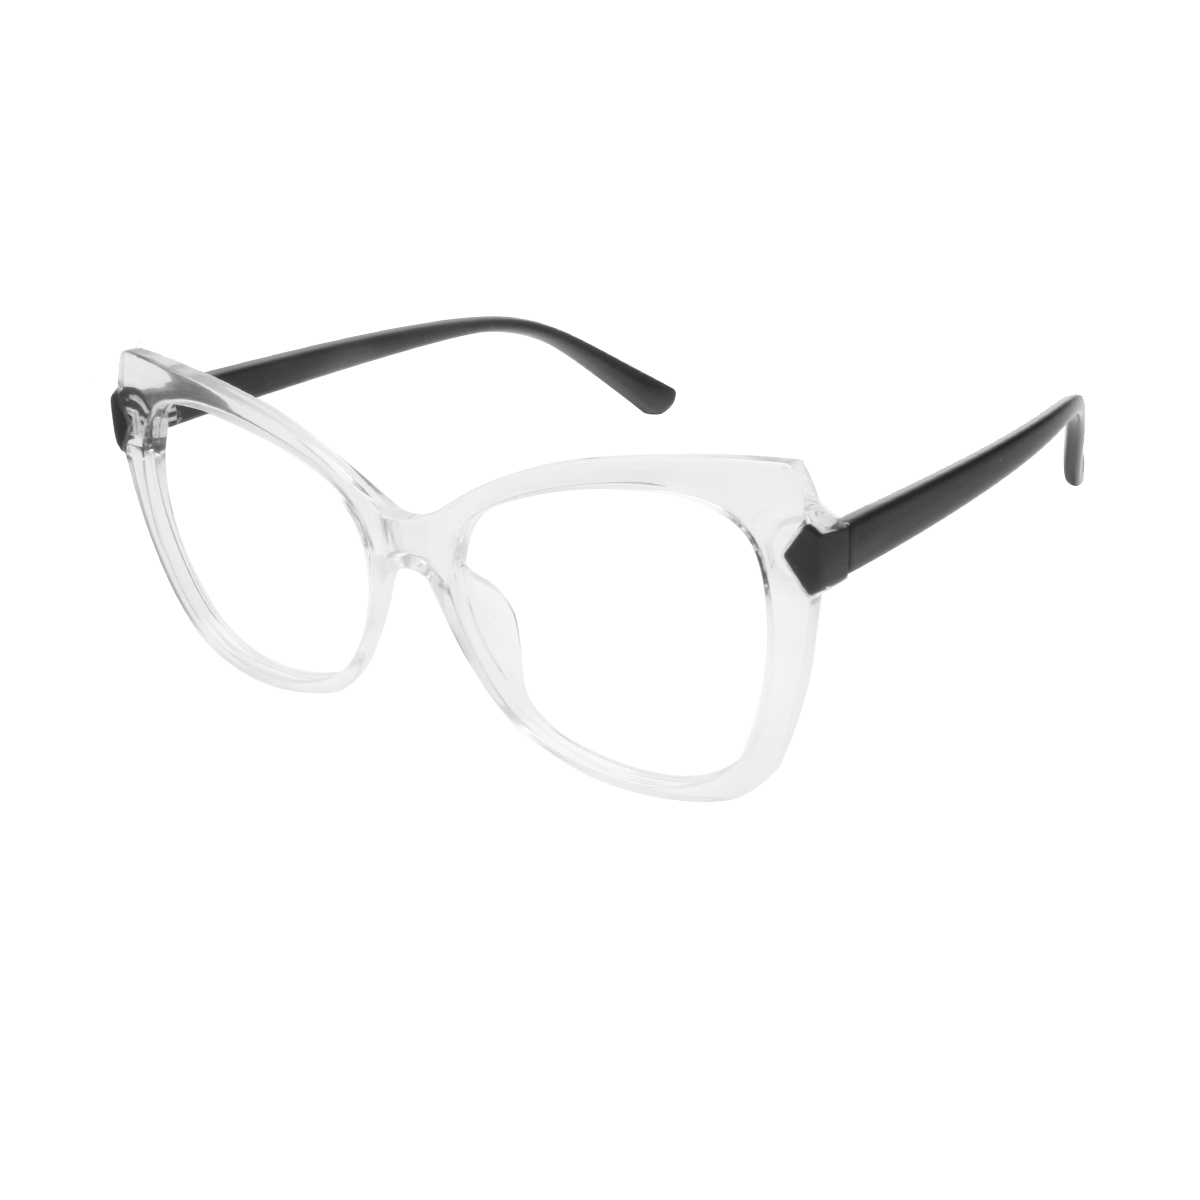 Alazir - Cat-eye Transparent Reading Glasses for Women